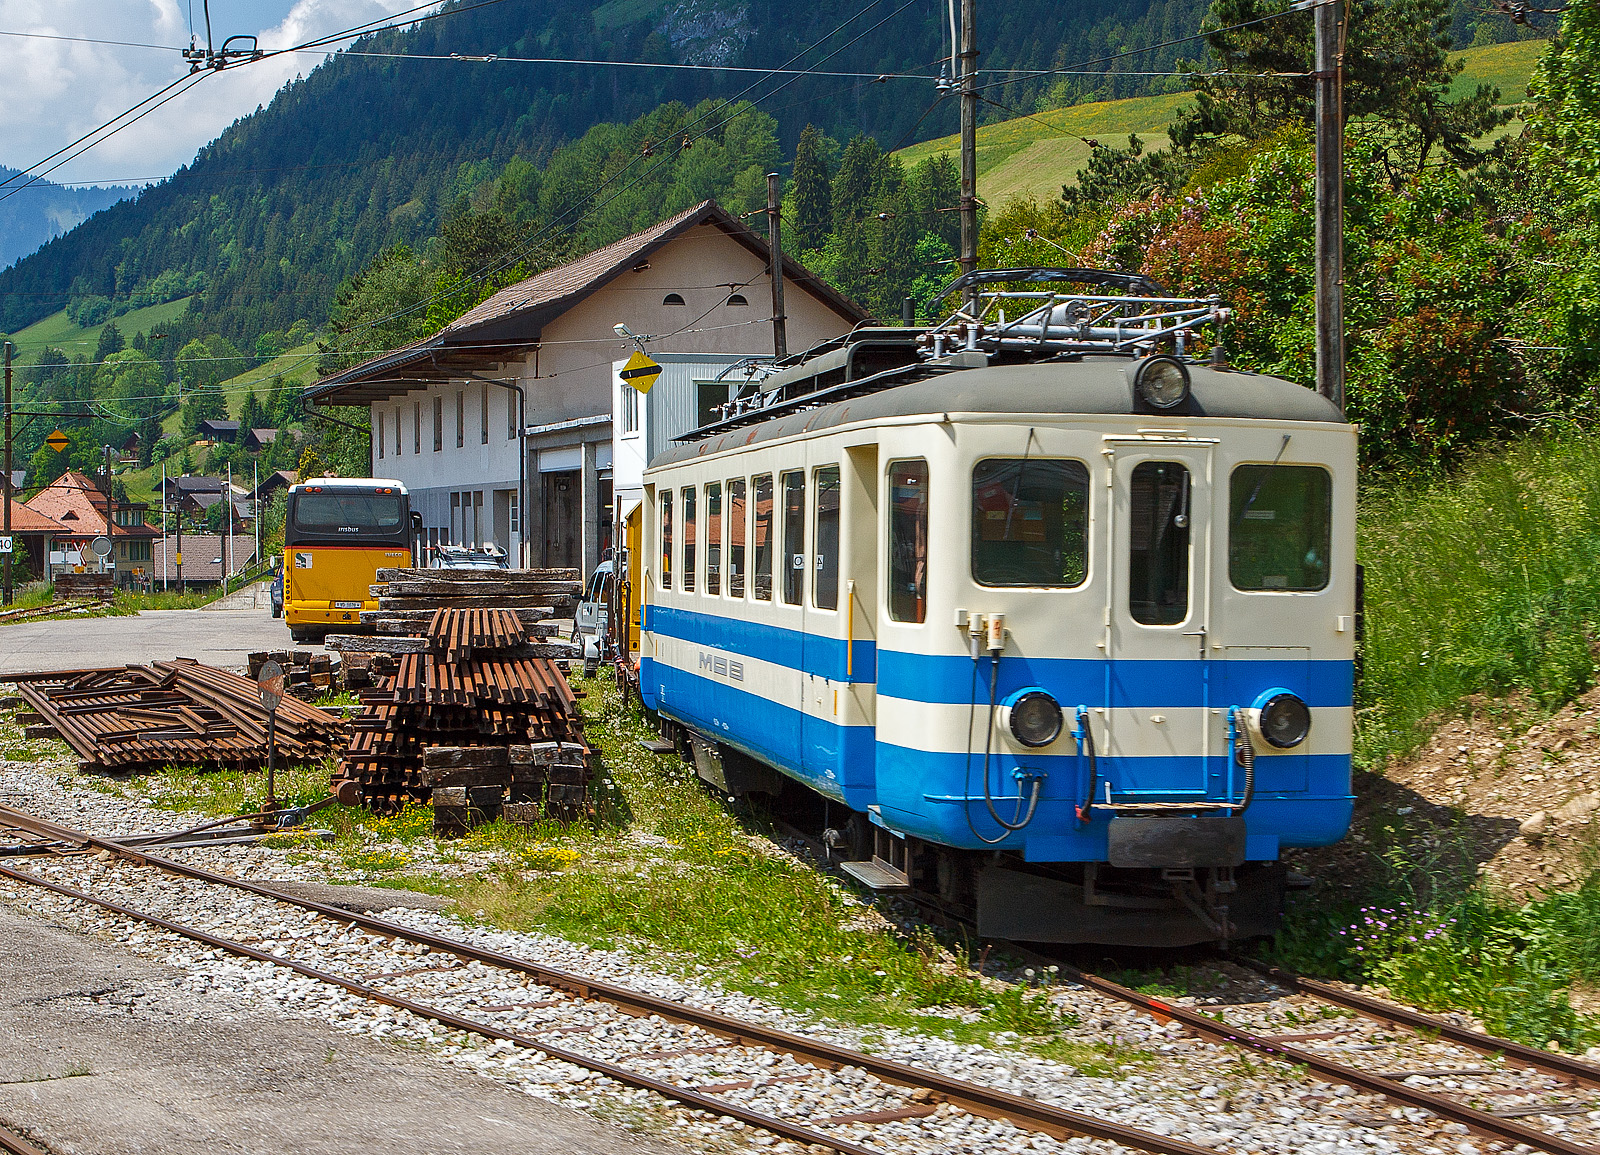 Der blaue MOB Be 4/4 1003 (ex FLP ABe 4/4 Nr. 5) abgestellt am 28 Mai 2012 in Château d'Oex, aufgenommen aus fahrendem Zug.

Der „Ex-Tessiner“ stammt von der FLP (Lugano- Ponte-Tresa Bahn), er wurde 1958 von der SWS (Schweizerische Waggons und Aufzügefabrik) in Schliere, mit der elektrischen Ausrüstung von der BBC (Brown, Boveri & Cie., Baden), gebaut und an die FLP (Ferrovia Lugano–Ponte Tresa) geliefert und als FLP  ABe 4/4 Nr. 5 in Dienst gestellt. Im Jahr 1981 wurde der Triebwagen von der MOB erworben. Neben den üblichen Umbauten für Einmannbetrieb musste insbesondere die Heizung verstärkt werden – die FLP fährt unter 1.000 V, und außerdem war die Anlage ursprünglich für die klimatischen Bedingungen im Tessin ausgelegt, die Winter im Simmental sind etwas härter. Aber auch andere Umbauten mussten gemacht werden u.a. Einbau einer Druckluftanlage. So erfolgte die Inbetriebnahme bei der MOB erst 1984 als Be 4/4 1003''.

1993 erfolgte der Einbau der Zugsicherung. Wobei der Einsatz, wegen fehlender Magnetschienenbremse war der Einsatz auf die Teilstrecke Lenk - Montbovon beschränkt. Oder er war im Rangierdienst in Gstaad und Château d'Oex eingesetzt. Am 31.Oktober  2017 erfolgte der Abbruch in Vevey.

TECHNISCHE DATEN:
Hersteller: SWS / BBC / MOB
Spurweite: 1.000 mm (Schmalspur)
Achsformel: Bo’Bo’
Länge über Puffer: 16.370 mm
Länge des Kastens: 15.370 mm
Drehzapfenabstand: 10.350mm
Achsabstand im Drehgestell: 2.200 mm
Triebraddurchmesser: 870 mm (neu)
Höhe: 4.020 mm
Breite: 2.680 mm
Stundenleistung: 221kW
Stundenzugkraft : 
Übersetzung: 1:4,28
Höchstgeschwindigkeit: 55 km/h
Eigengewicht: 29 t
Fahrleitungsspannung: 850 V DC (=),bei LCD 1.000 V DC (=)
Stromabnehmer: 2 Scherenstromabnehmer
Sitzplätze: 56  (in der 2. Klasse) 
Bremsen: Hs / V / C
Kupplungen: Mittelpuffer mit einer Schraubenkupplungen (Zp 1)

Die 1912 eröffneten Ferrovia Lugano-Ponte Tresa besteht dagegen heute noch, seit dem Fahrplanwechsel vom 9. Dezember 2007 verkehren die Züge alle 15 Minuten, am Abend, an Wochenenden und Feiertagen alle 30 Minuten. Die Strecke ist als Linie S60 in das Netz der S-Bahn Tessin integriert.	

Quellen: triebzug.ch, x-rail.ch, juergs.ch, de.wikipedia.org
